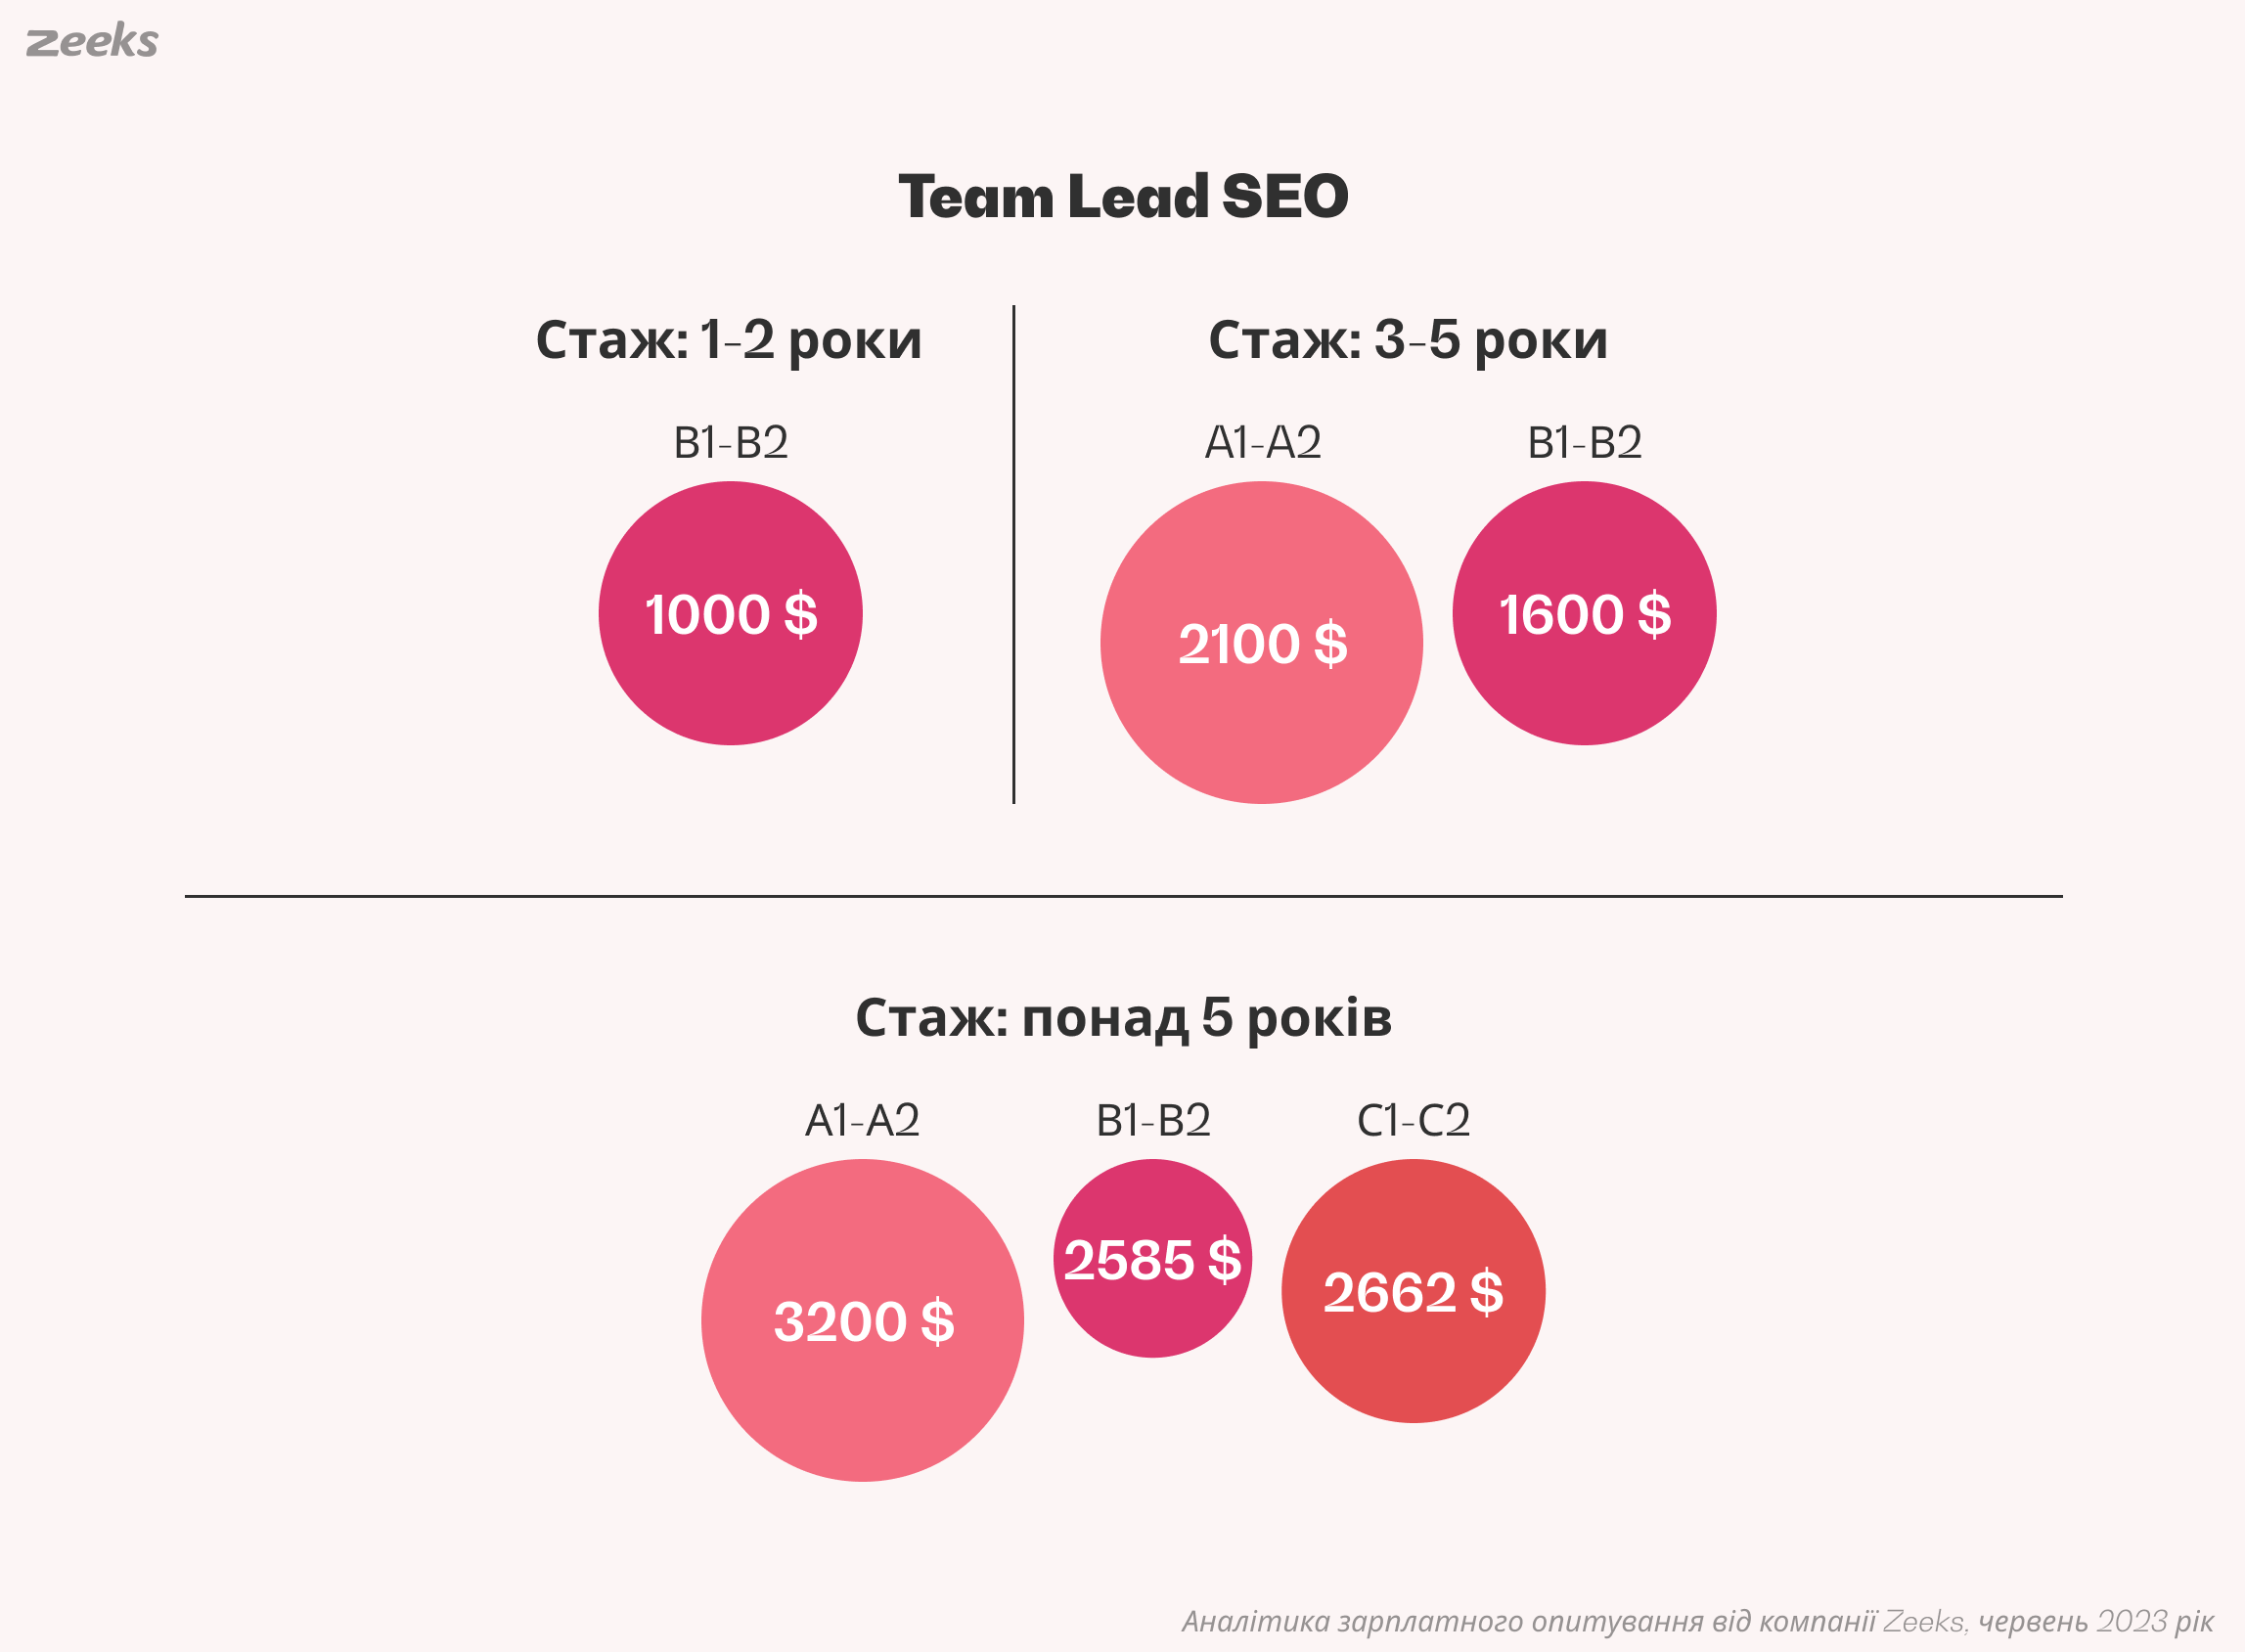 Team Lead SEO - знання англійської мови та середня заробітня плата, аналітика Zeeks